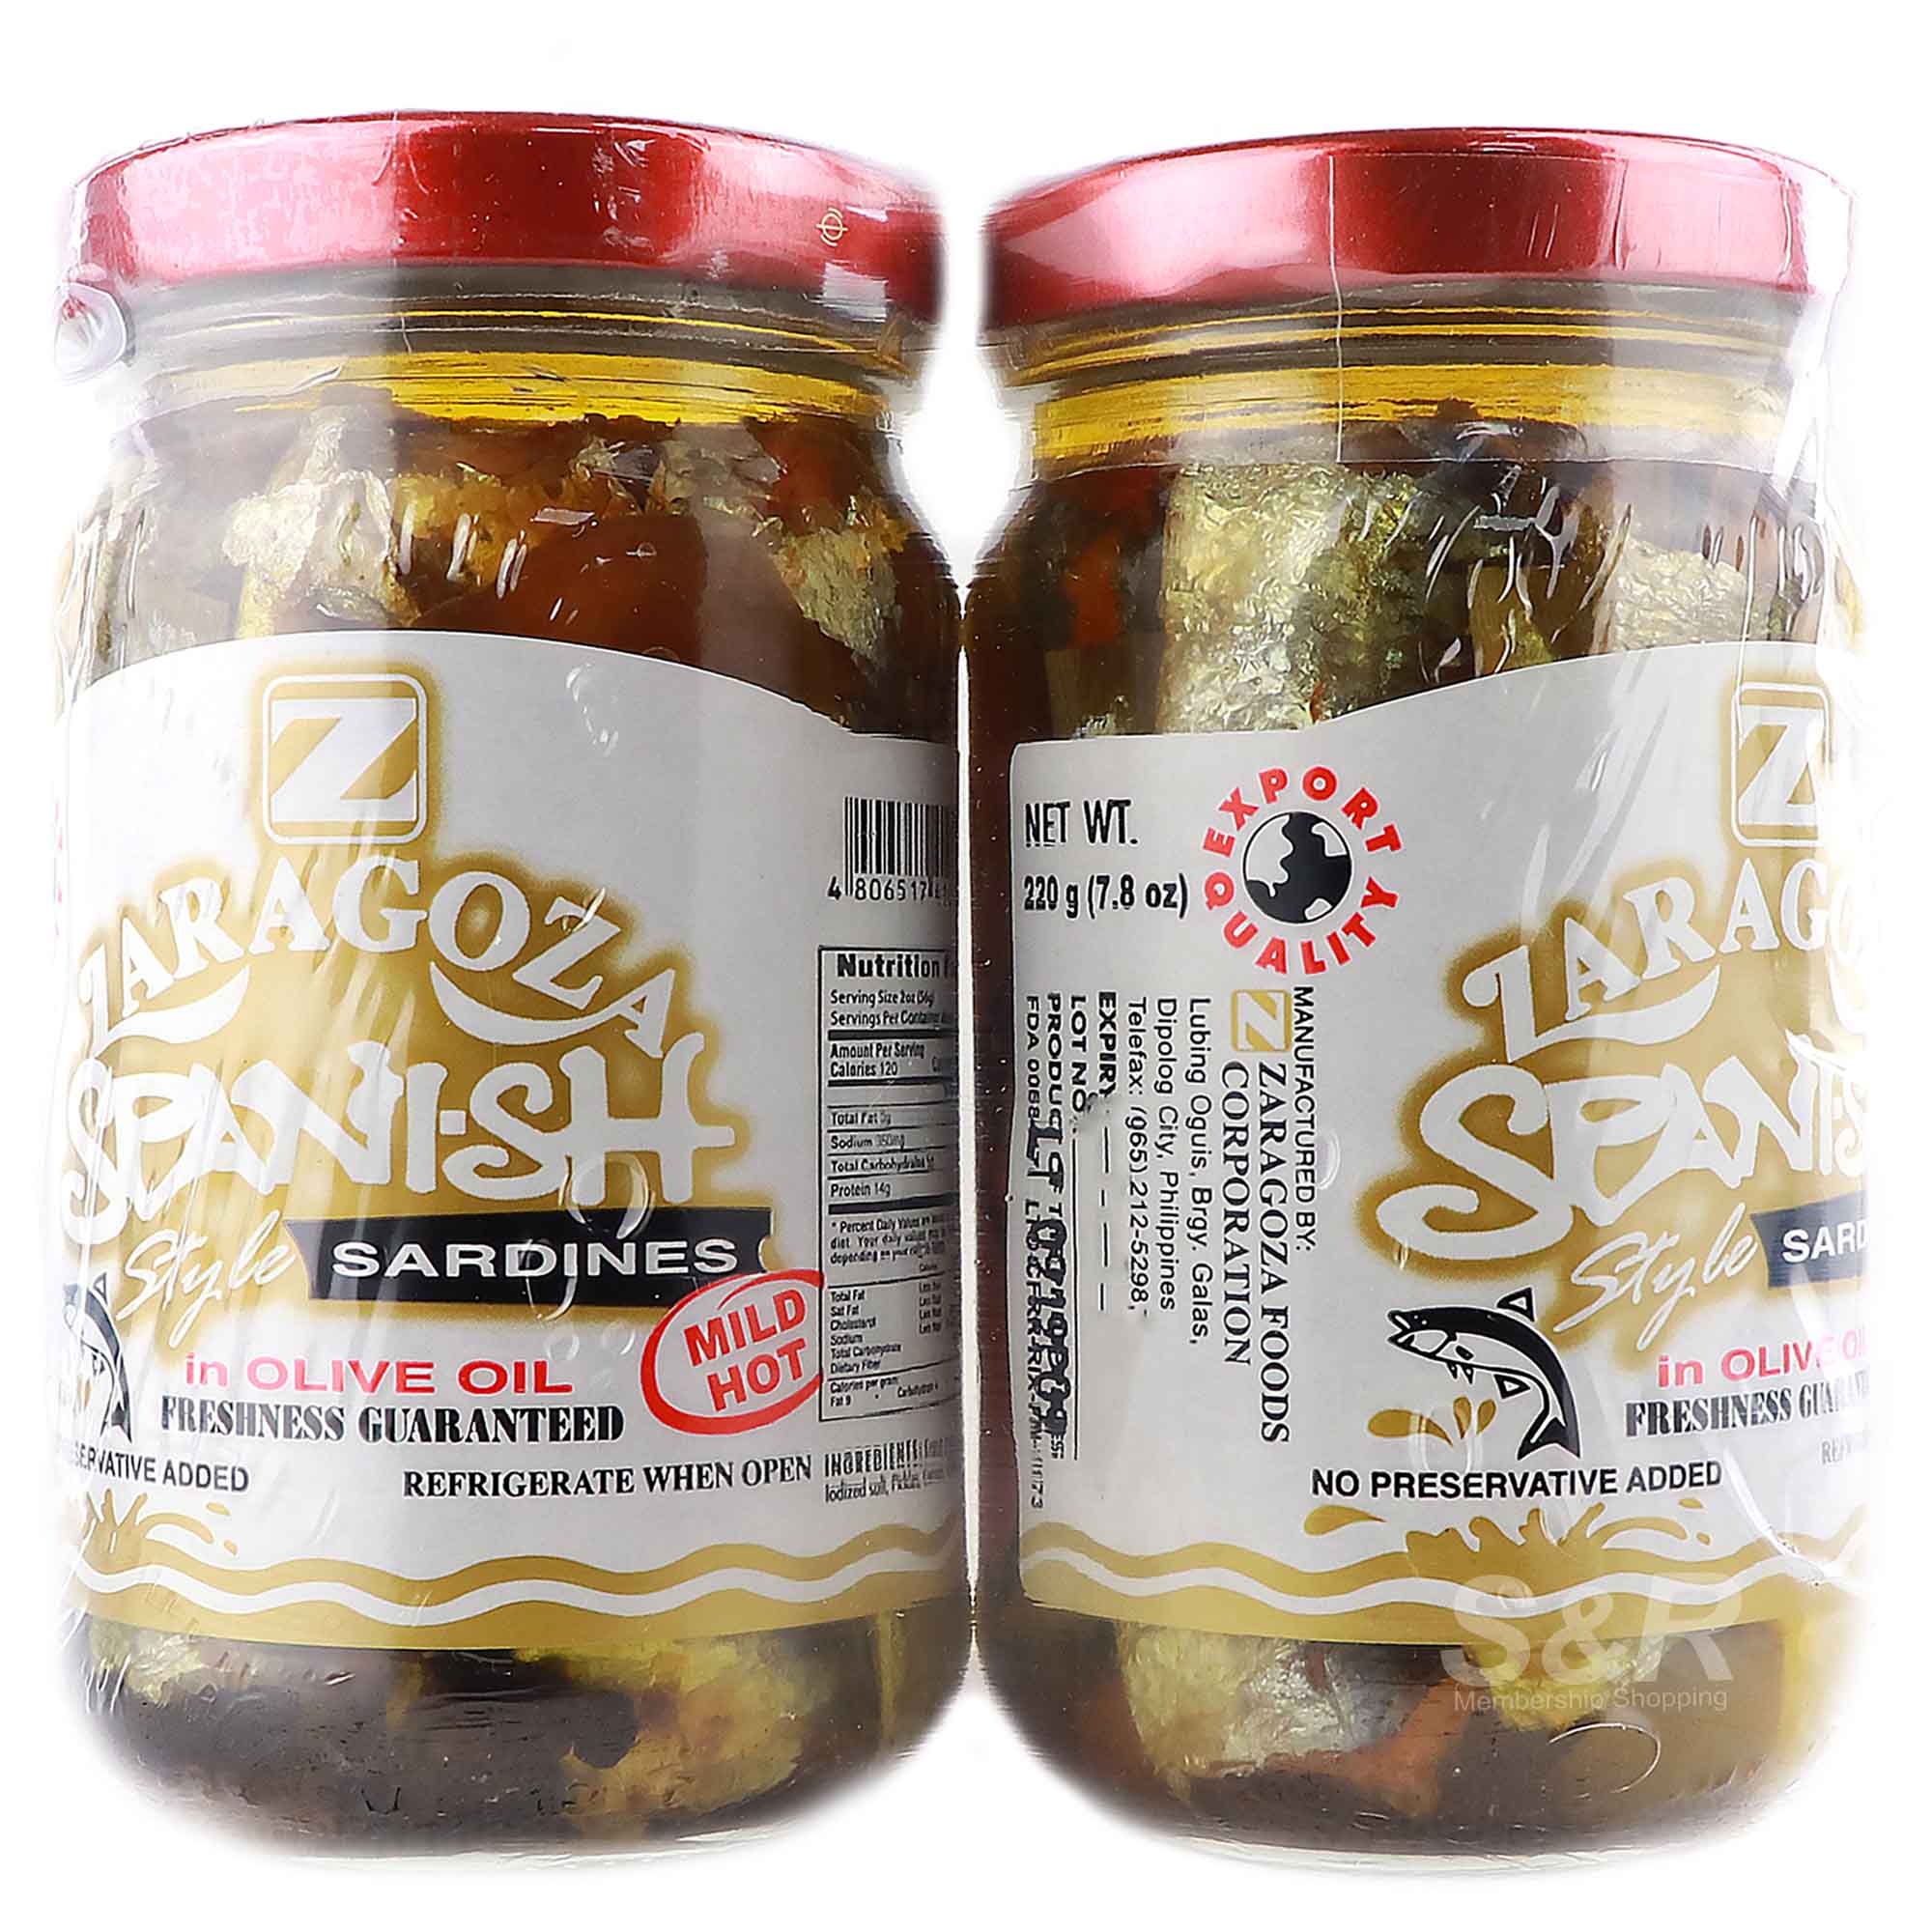 Zaragoza Spanish Style Sardines in Olive Oil 2 jars